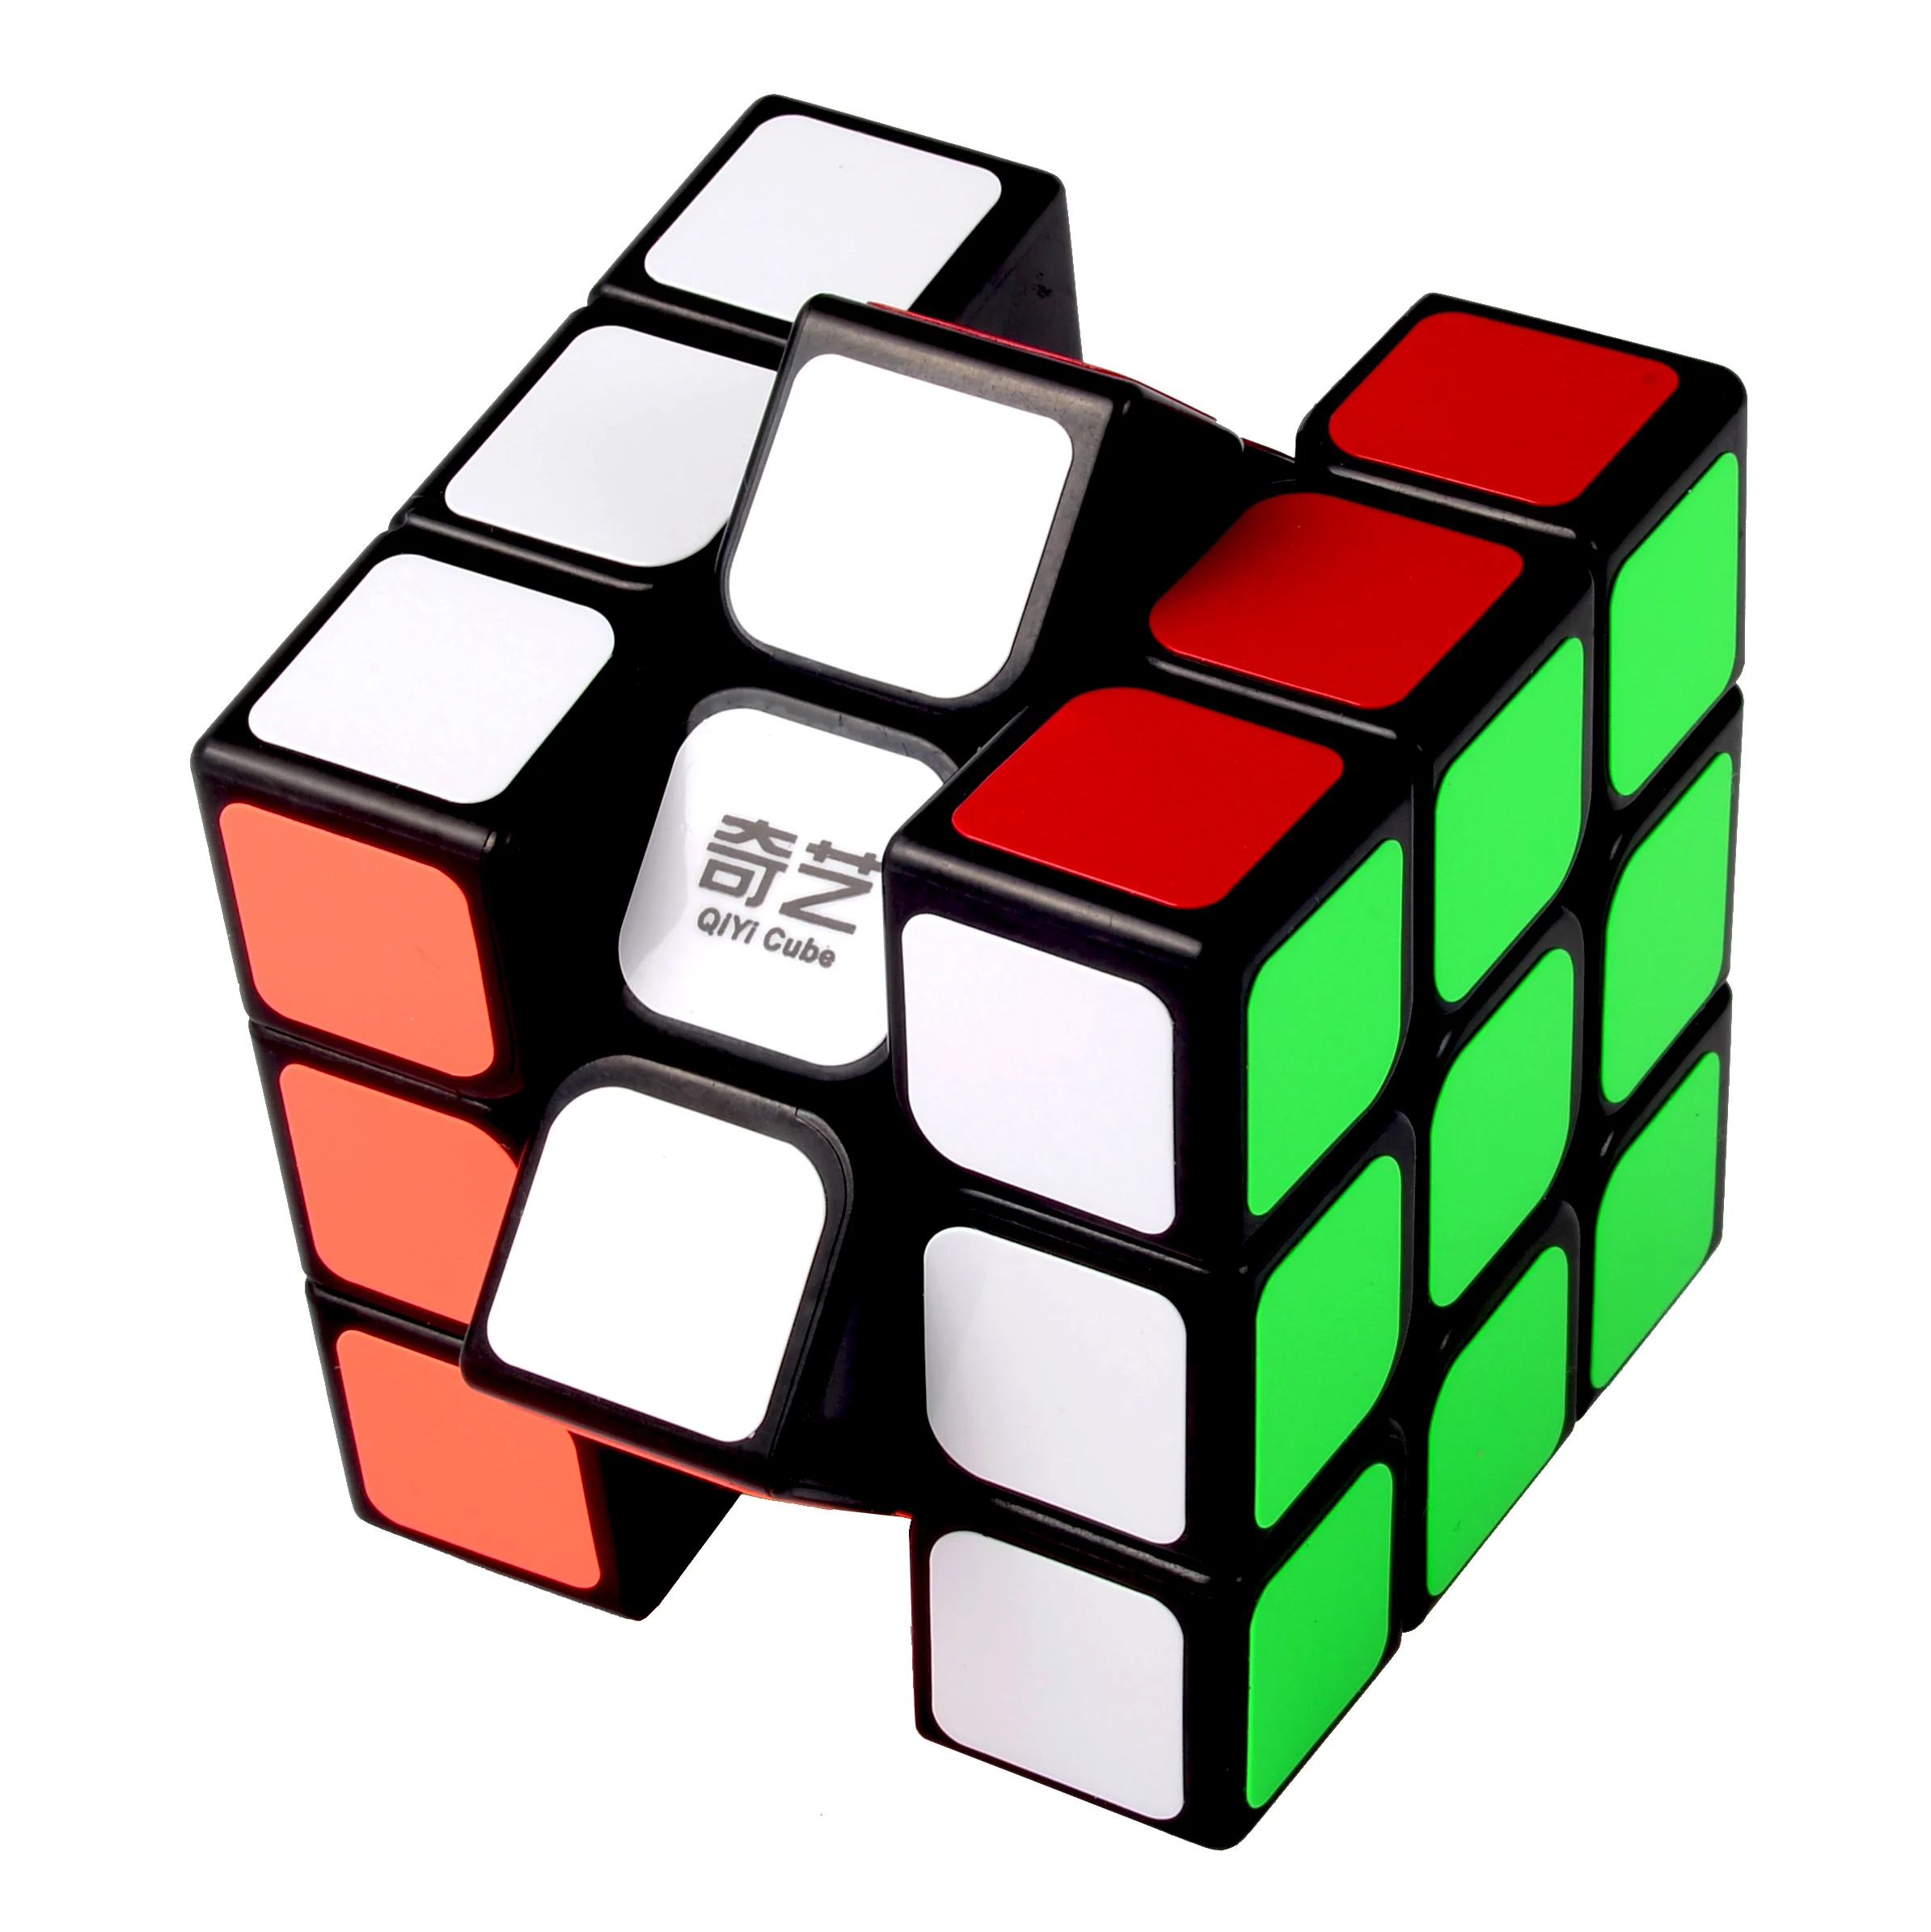 Qiyi магический куб, классические игрушки, 3x3x3 Стикеры блок Скорость куб, разноцветная, обучающая образовательная головоломка, Cubo Magico, Обучающие игрушки куб